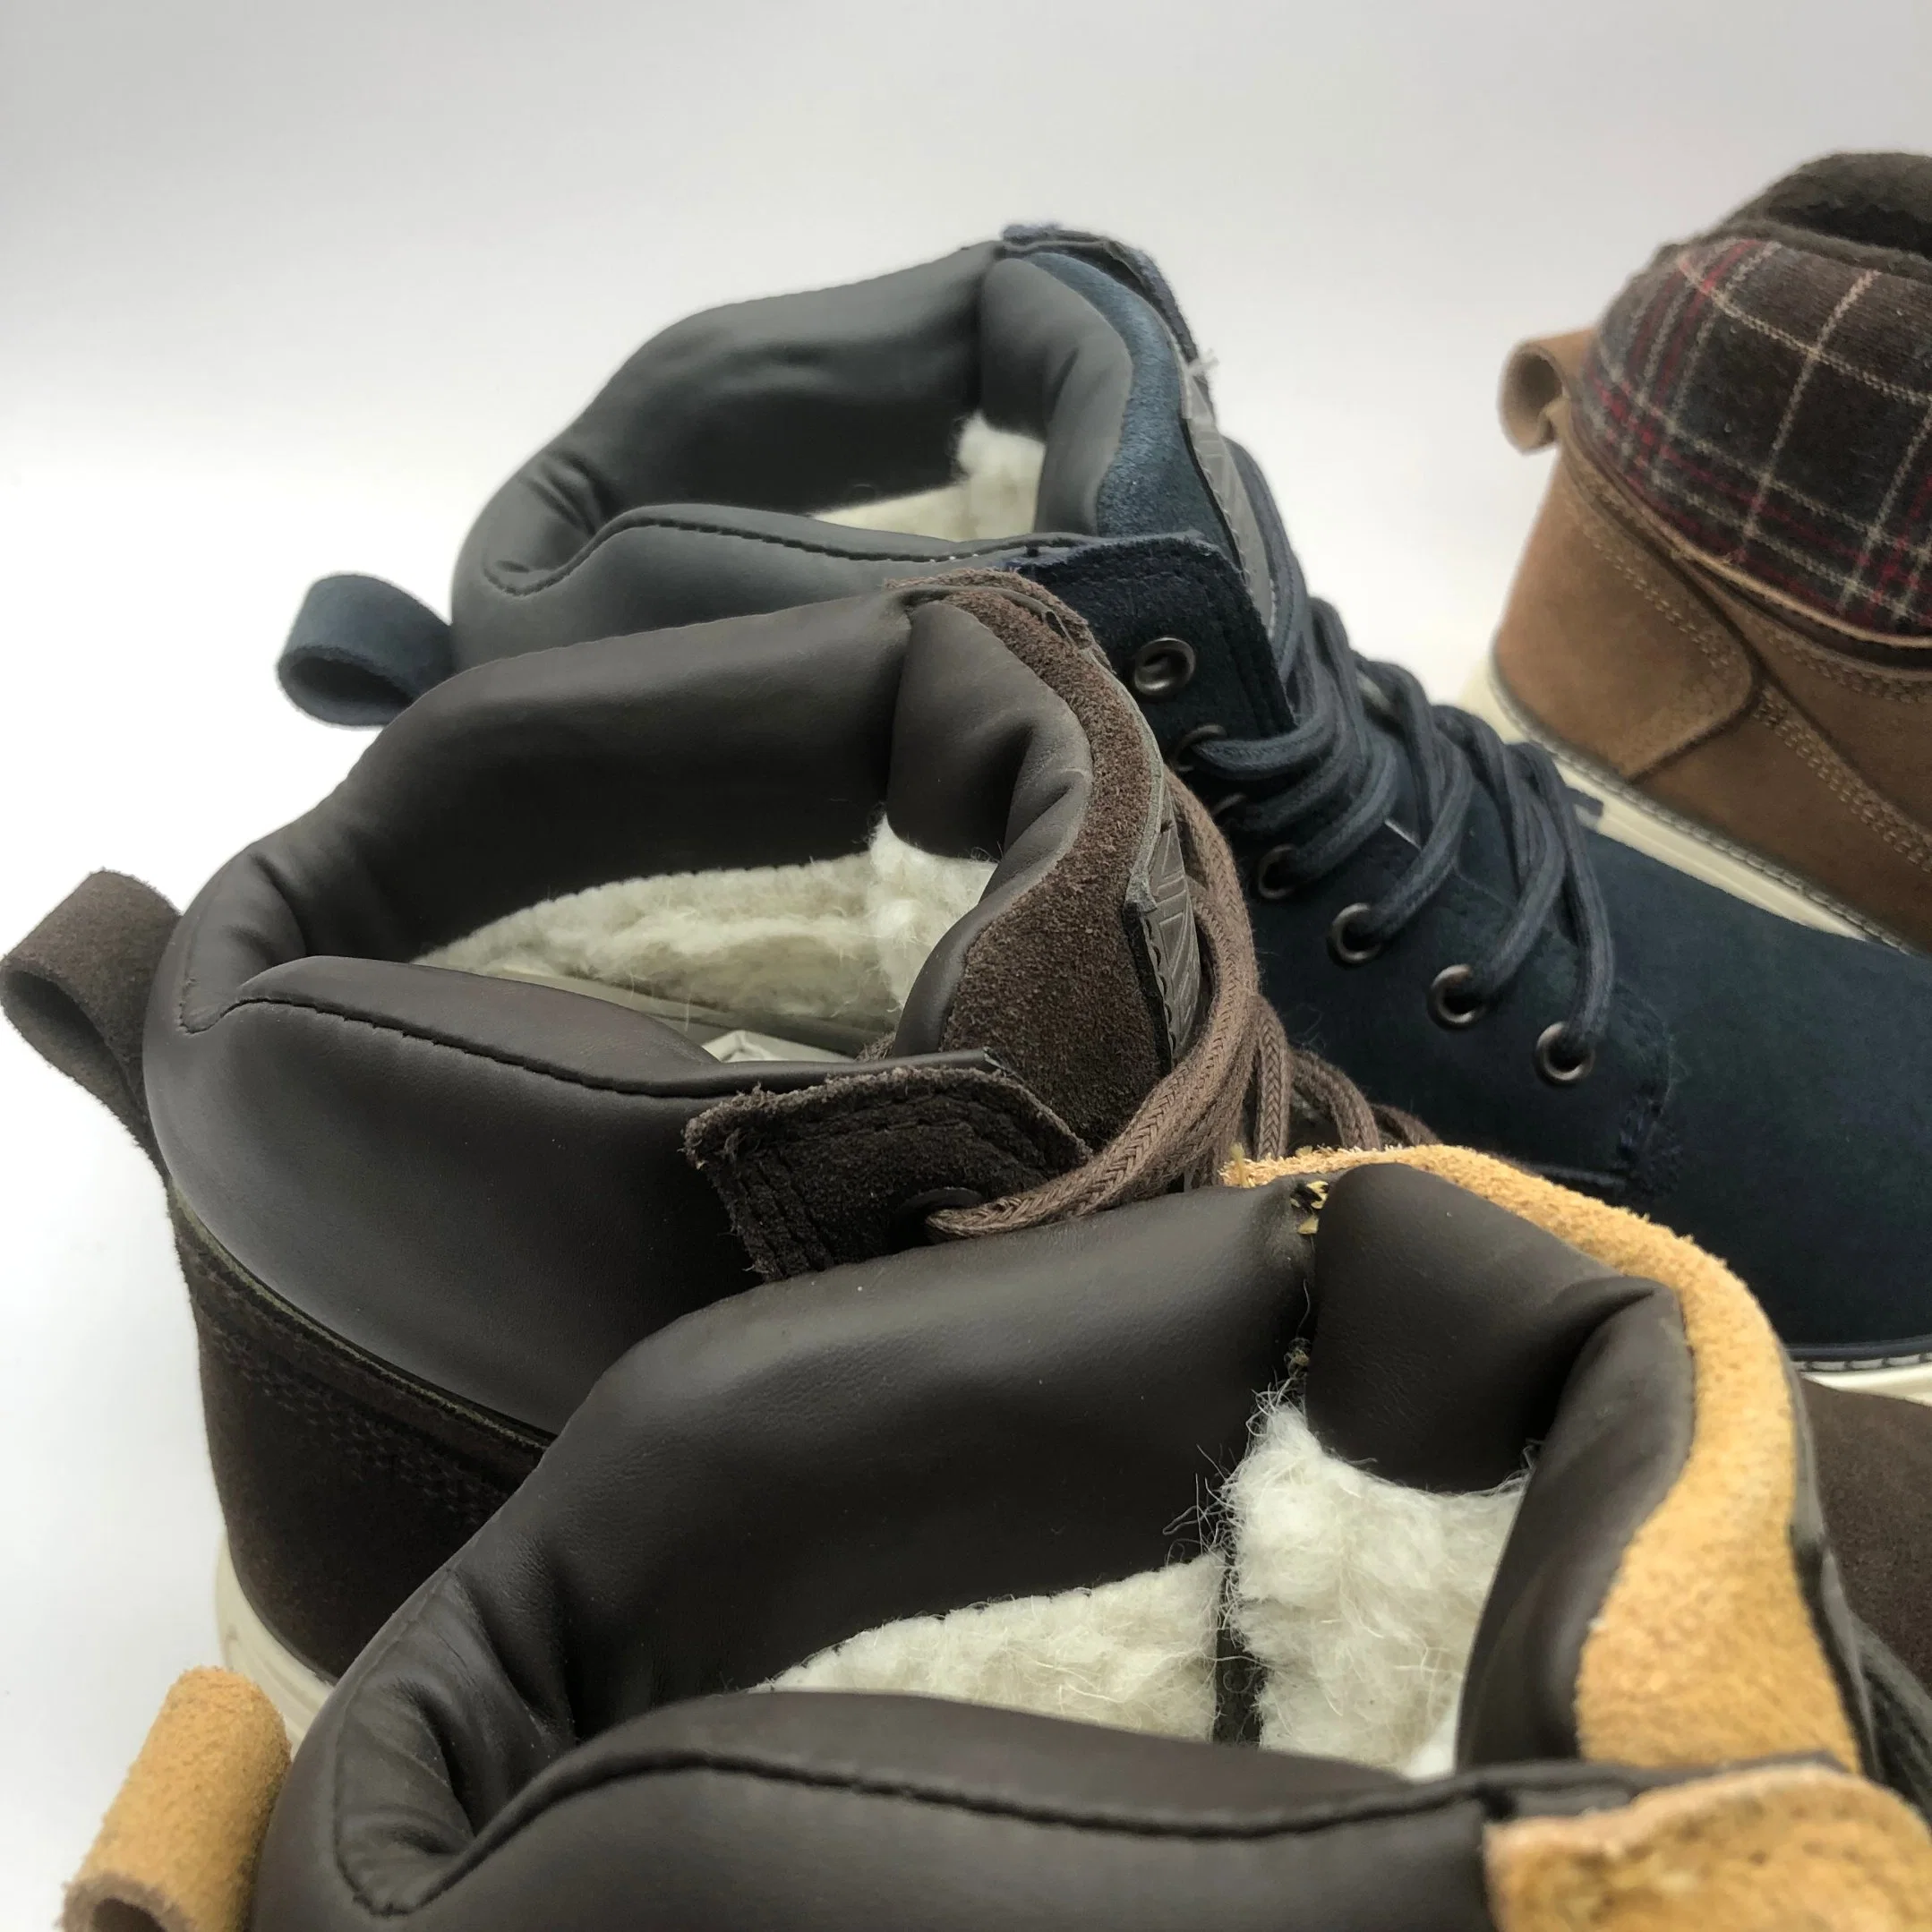 Winter Big Size Leather Boots Men's Plush PU Lace up Men's Shoes Warm Snow Trend Fashion Casual Men Shoes